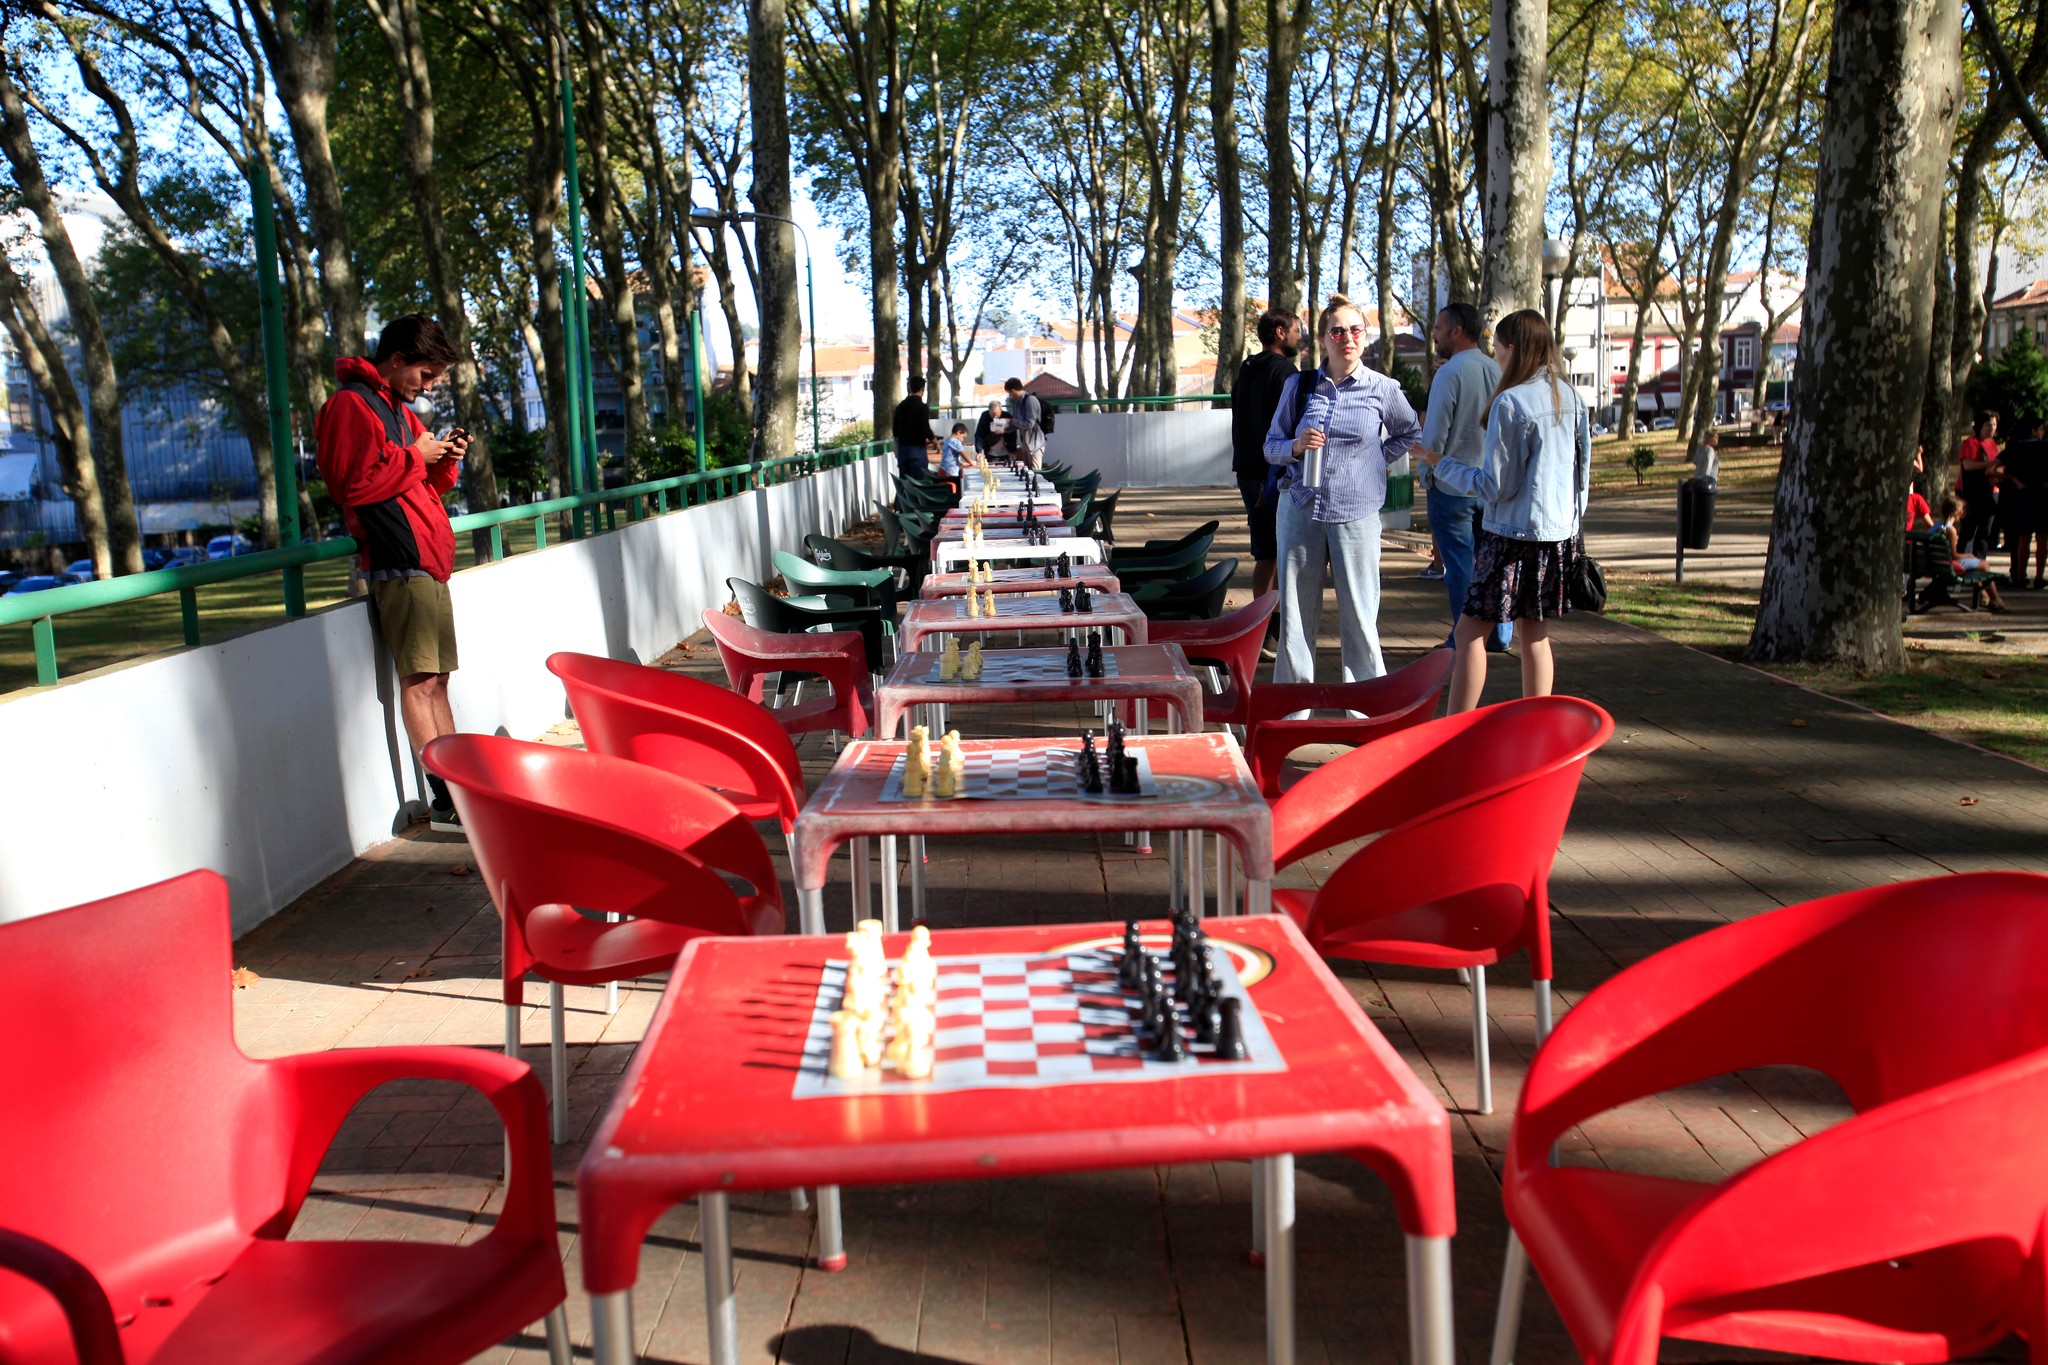 Locais ou clubes para jogar xadrez em Lisboa? : r/portugal